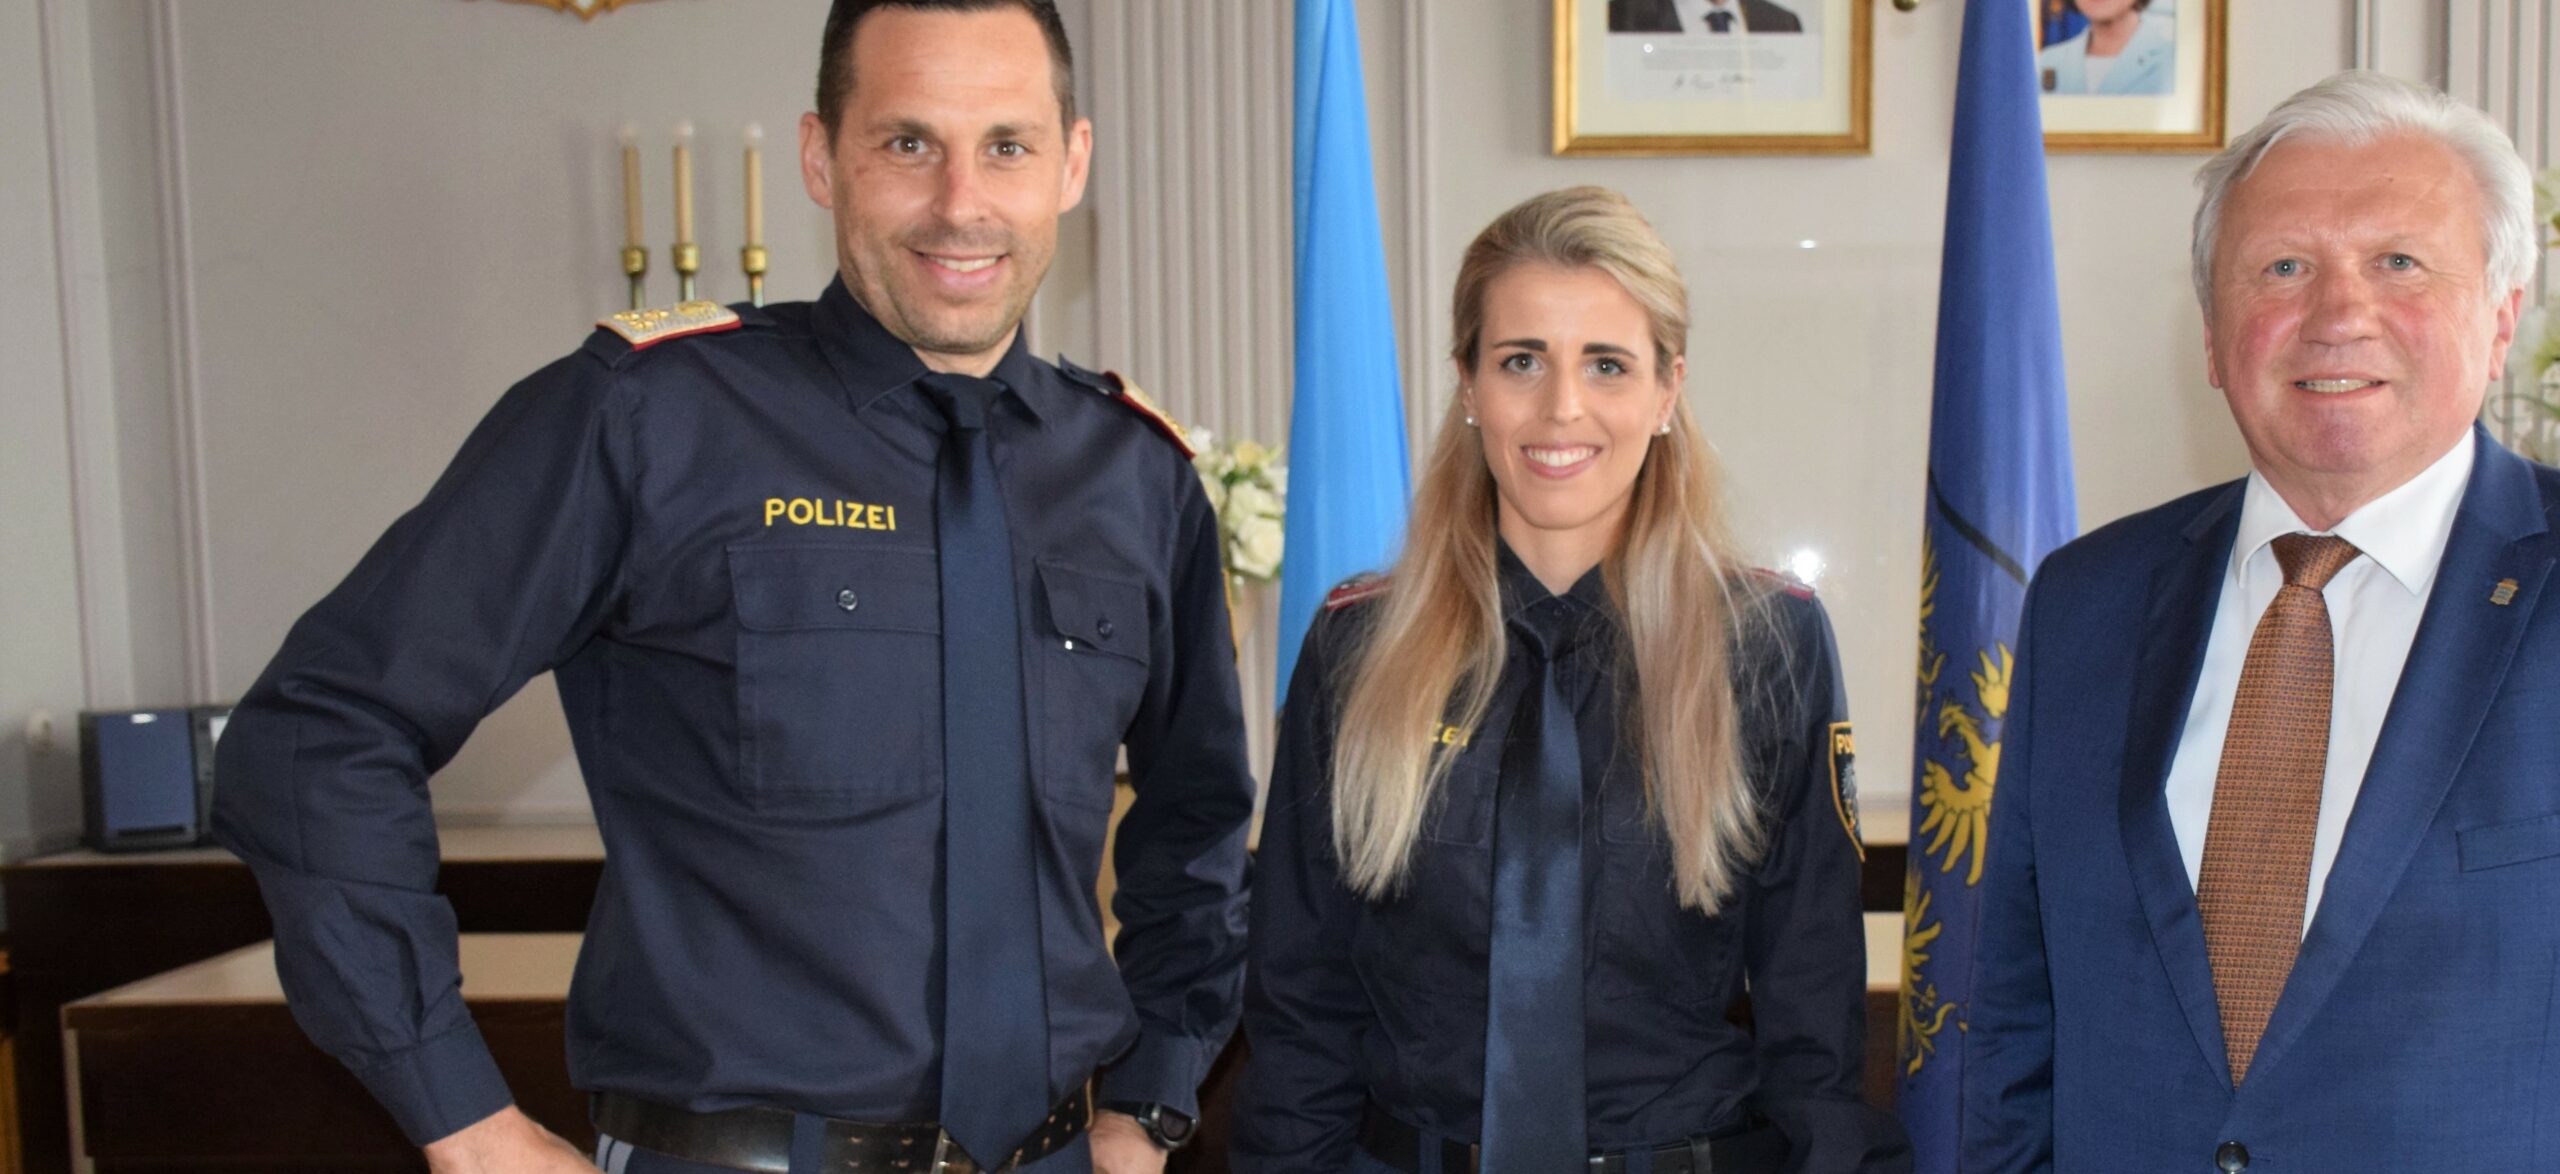 Margit Morgenbesser ist die erste Frau in der Geschichte der Stadtpolizei Neunkirchen